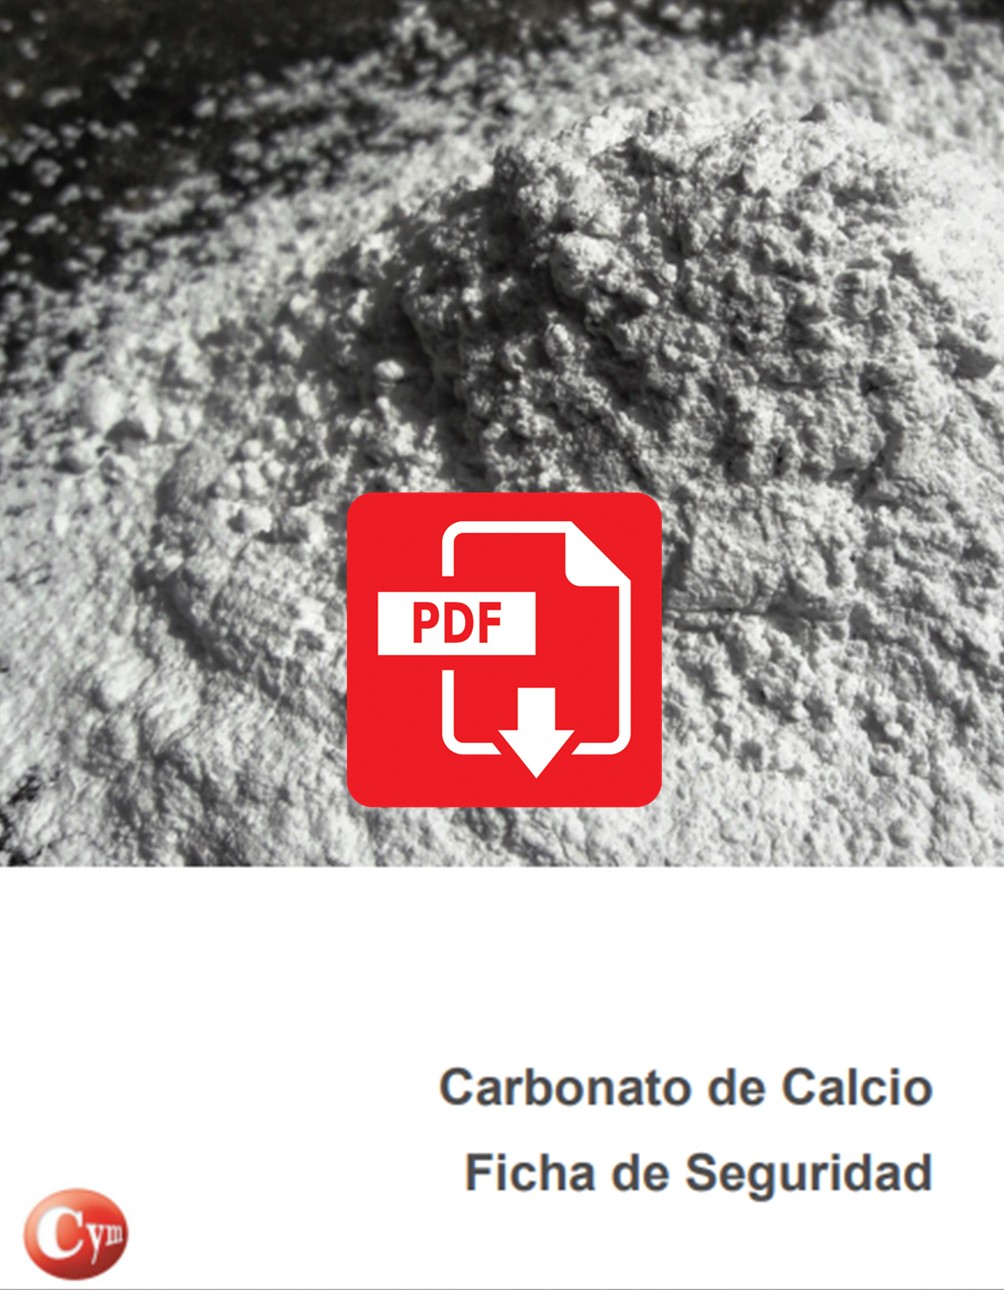 Abrasivos-carbonato-calcio-ficha-seguridad-cymmateriales